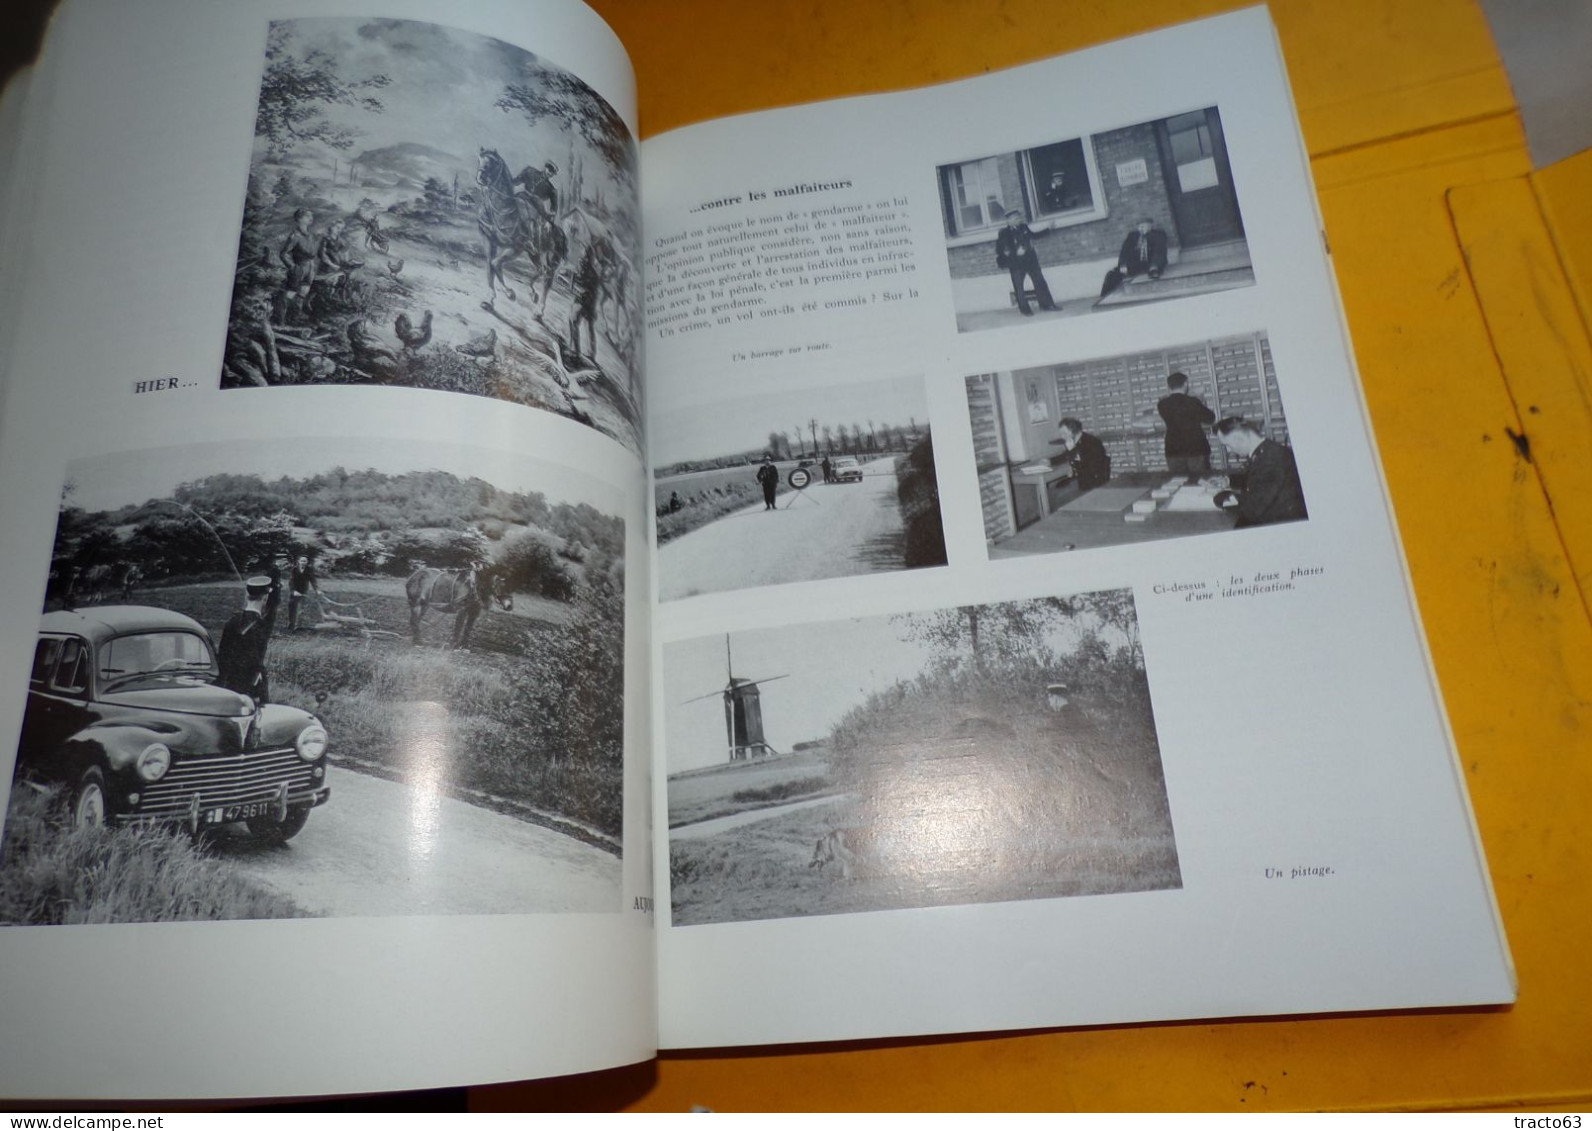 Gendarmerie Nationale Revue Historique de l’ Armée  1961   Dimensions : 21 cms X 27 cms 1150 grammes  266 pages + 45 pag